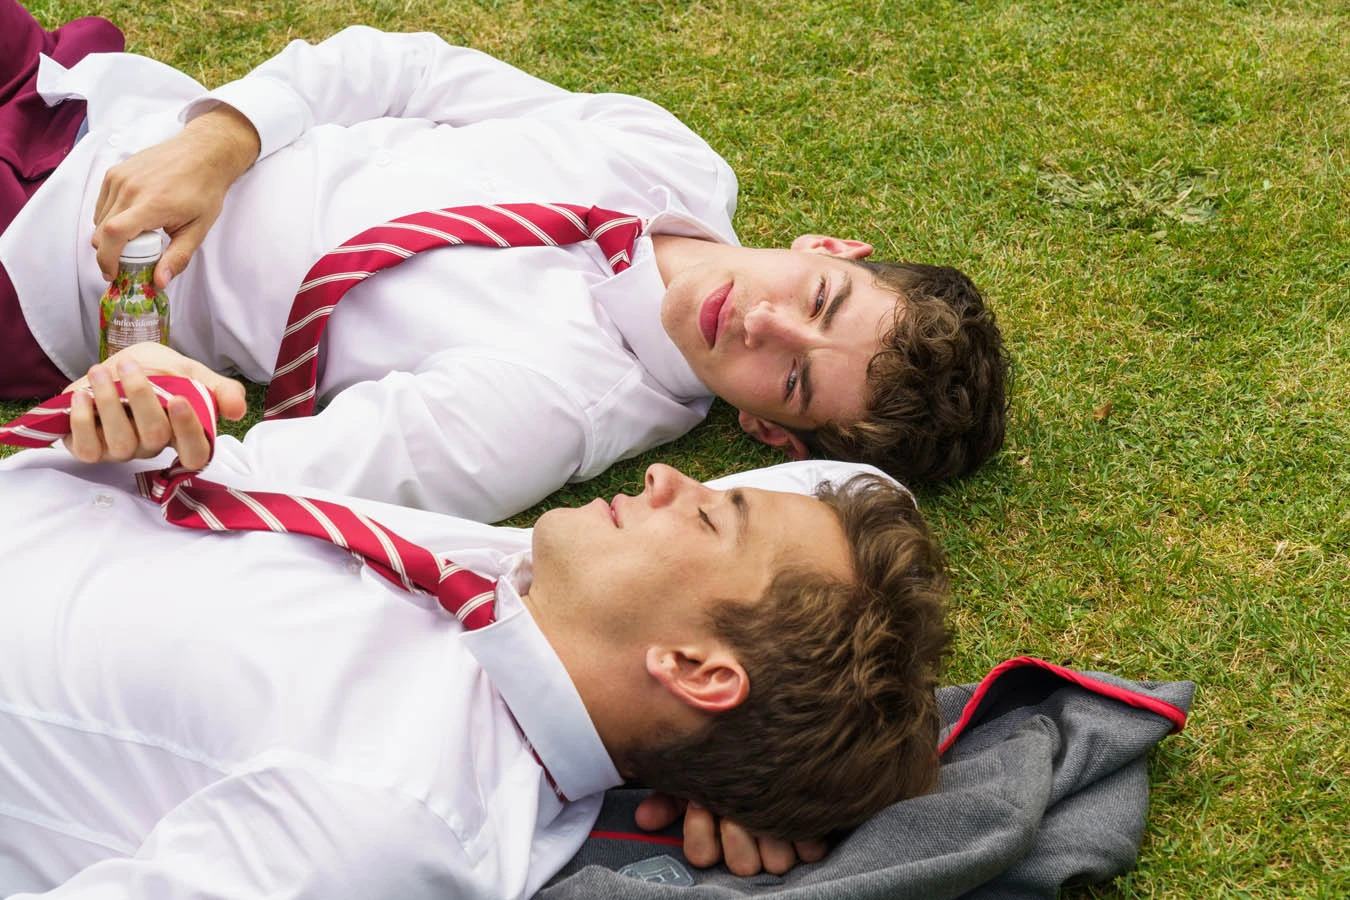 Cena da série Elite, mostra dois homens brancos deitados num gramado, sorrindo e se olhando. Eles usam camisas brancas, calças vermelhas e gravatas brancas e vermelhas. A grama é verde e está de dia.